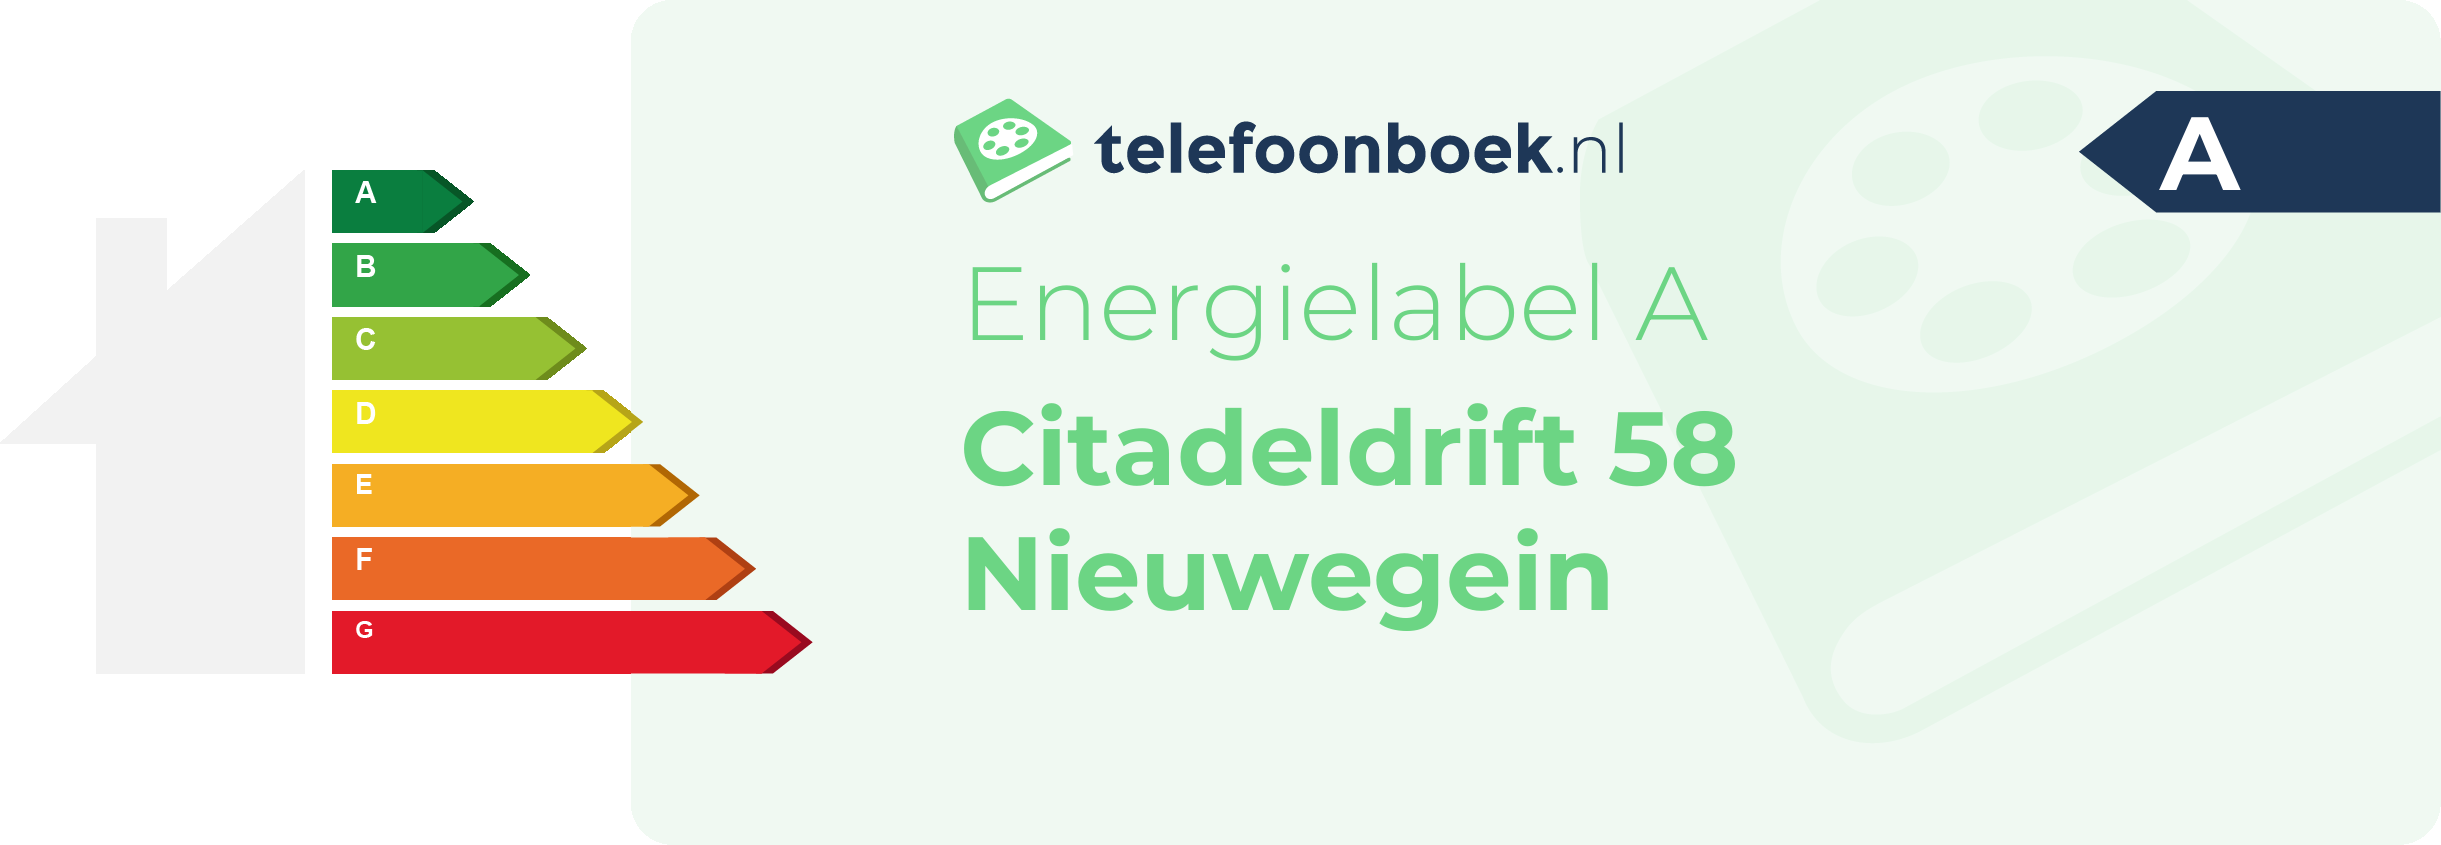 Energielabel Citadeldrift 58 Nieuwegein